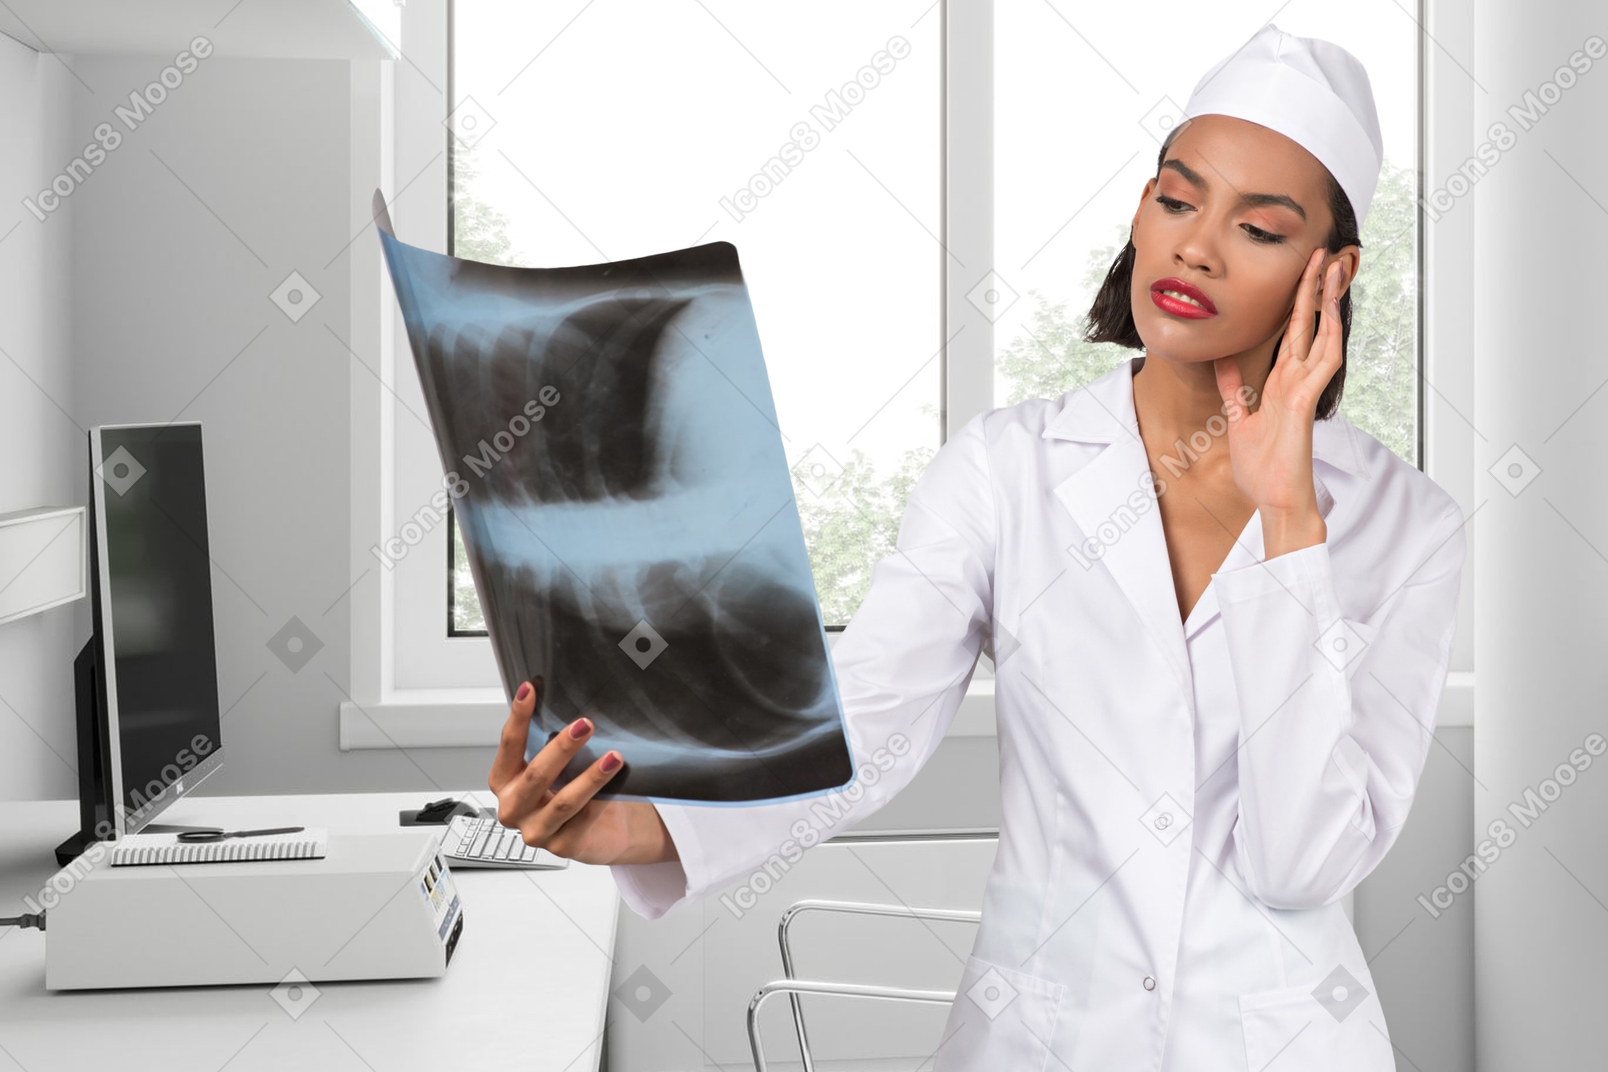 Doctora mirando una imagen de rayos x